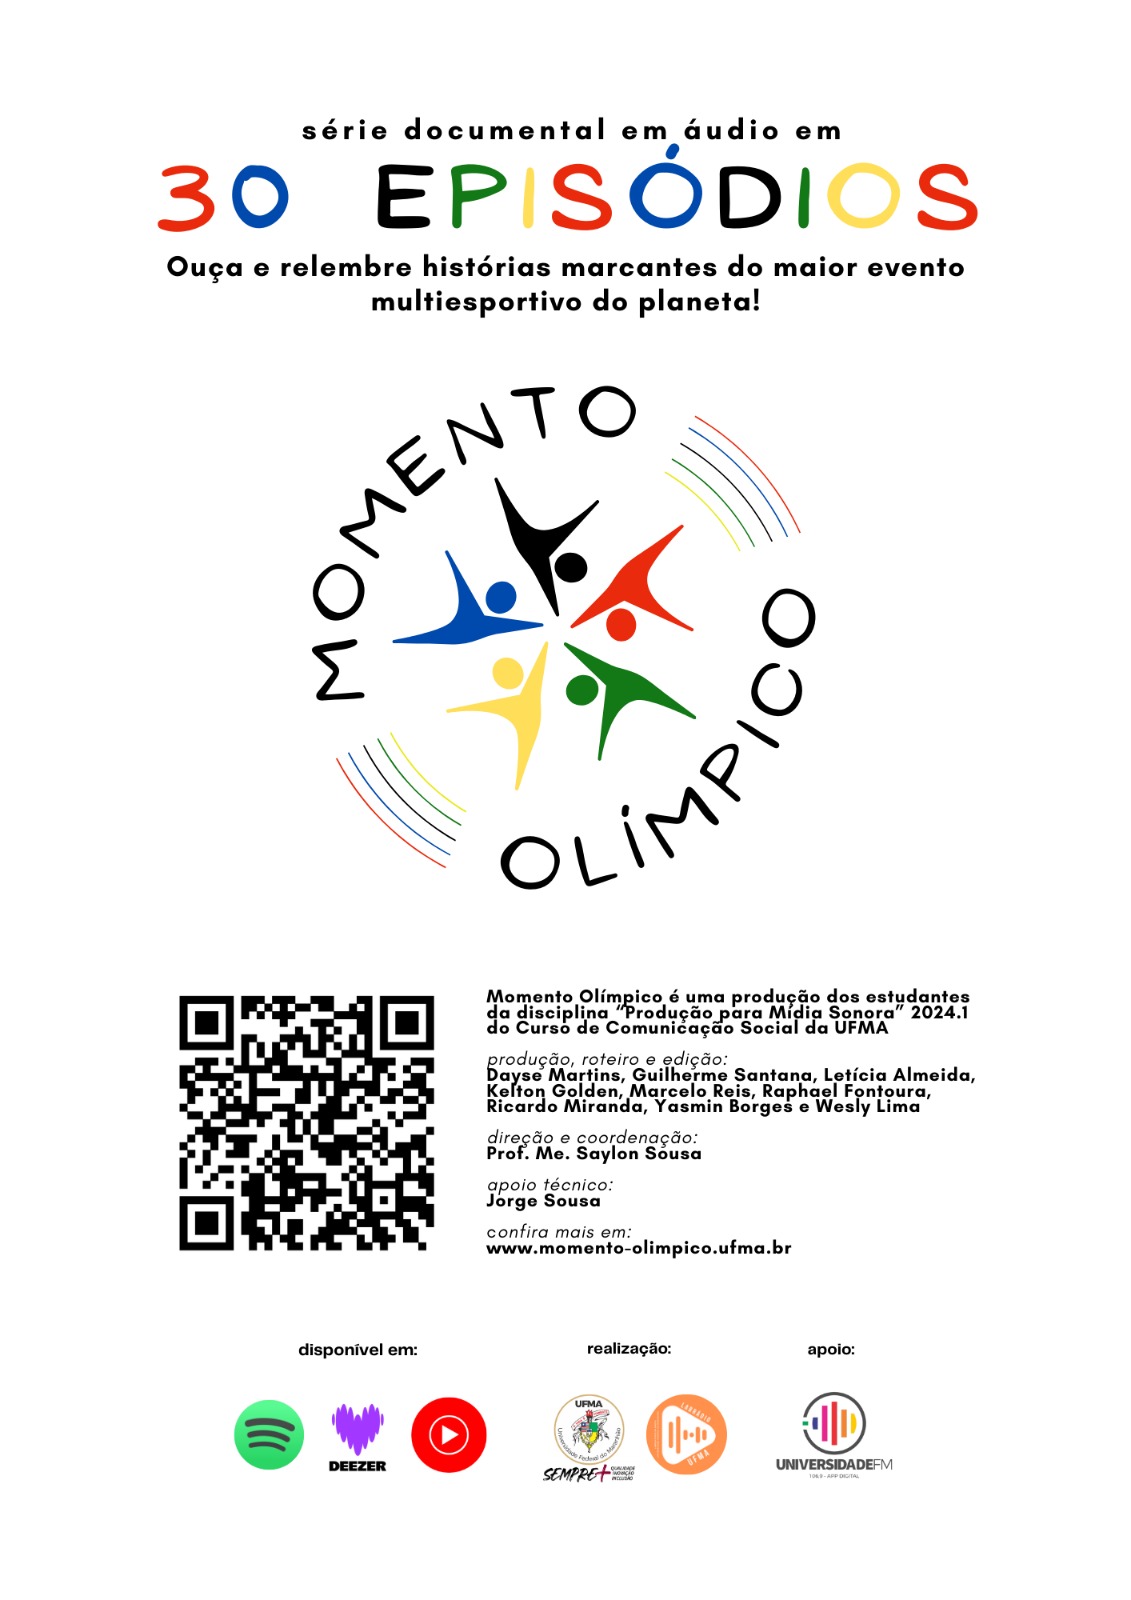 Discentes de Comunicação da UFMA lançam Programa "Momento Olímpico" com histórias dos Jogos de Verão